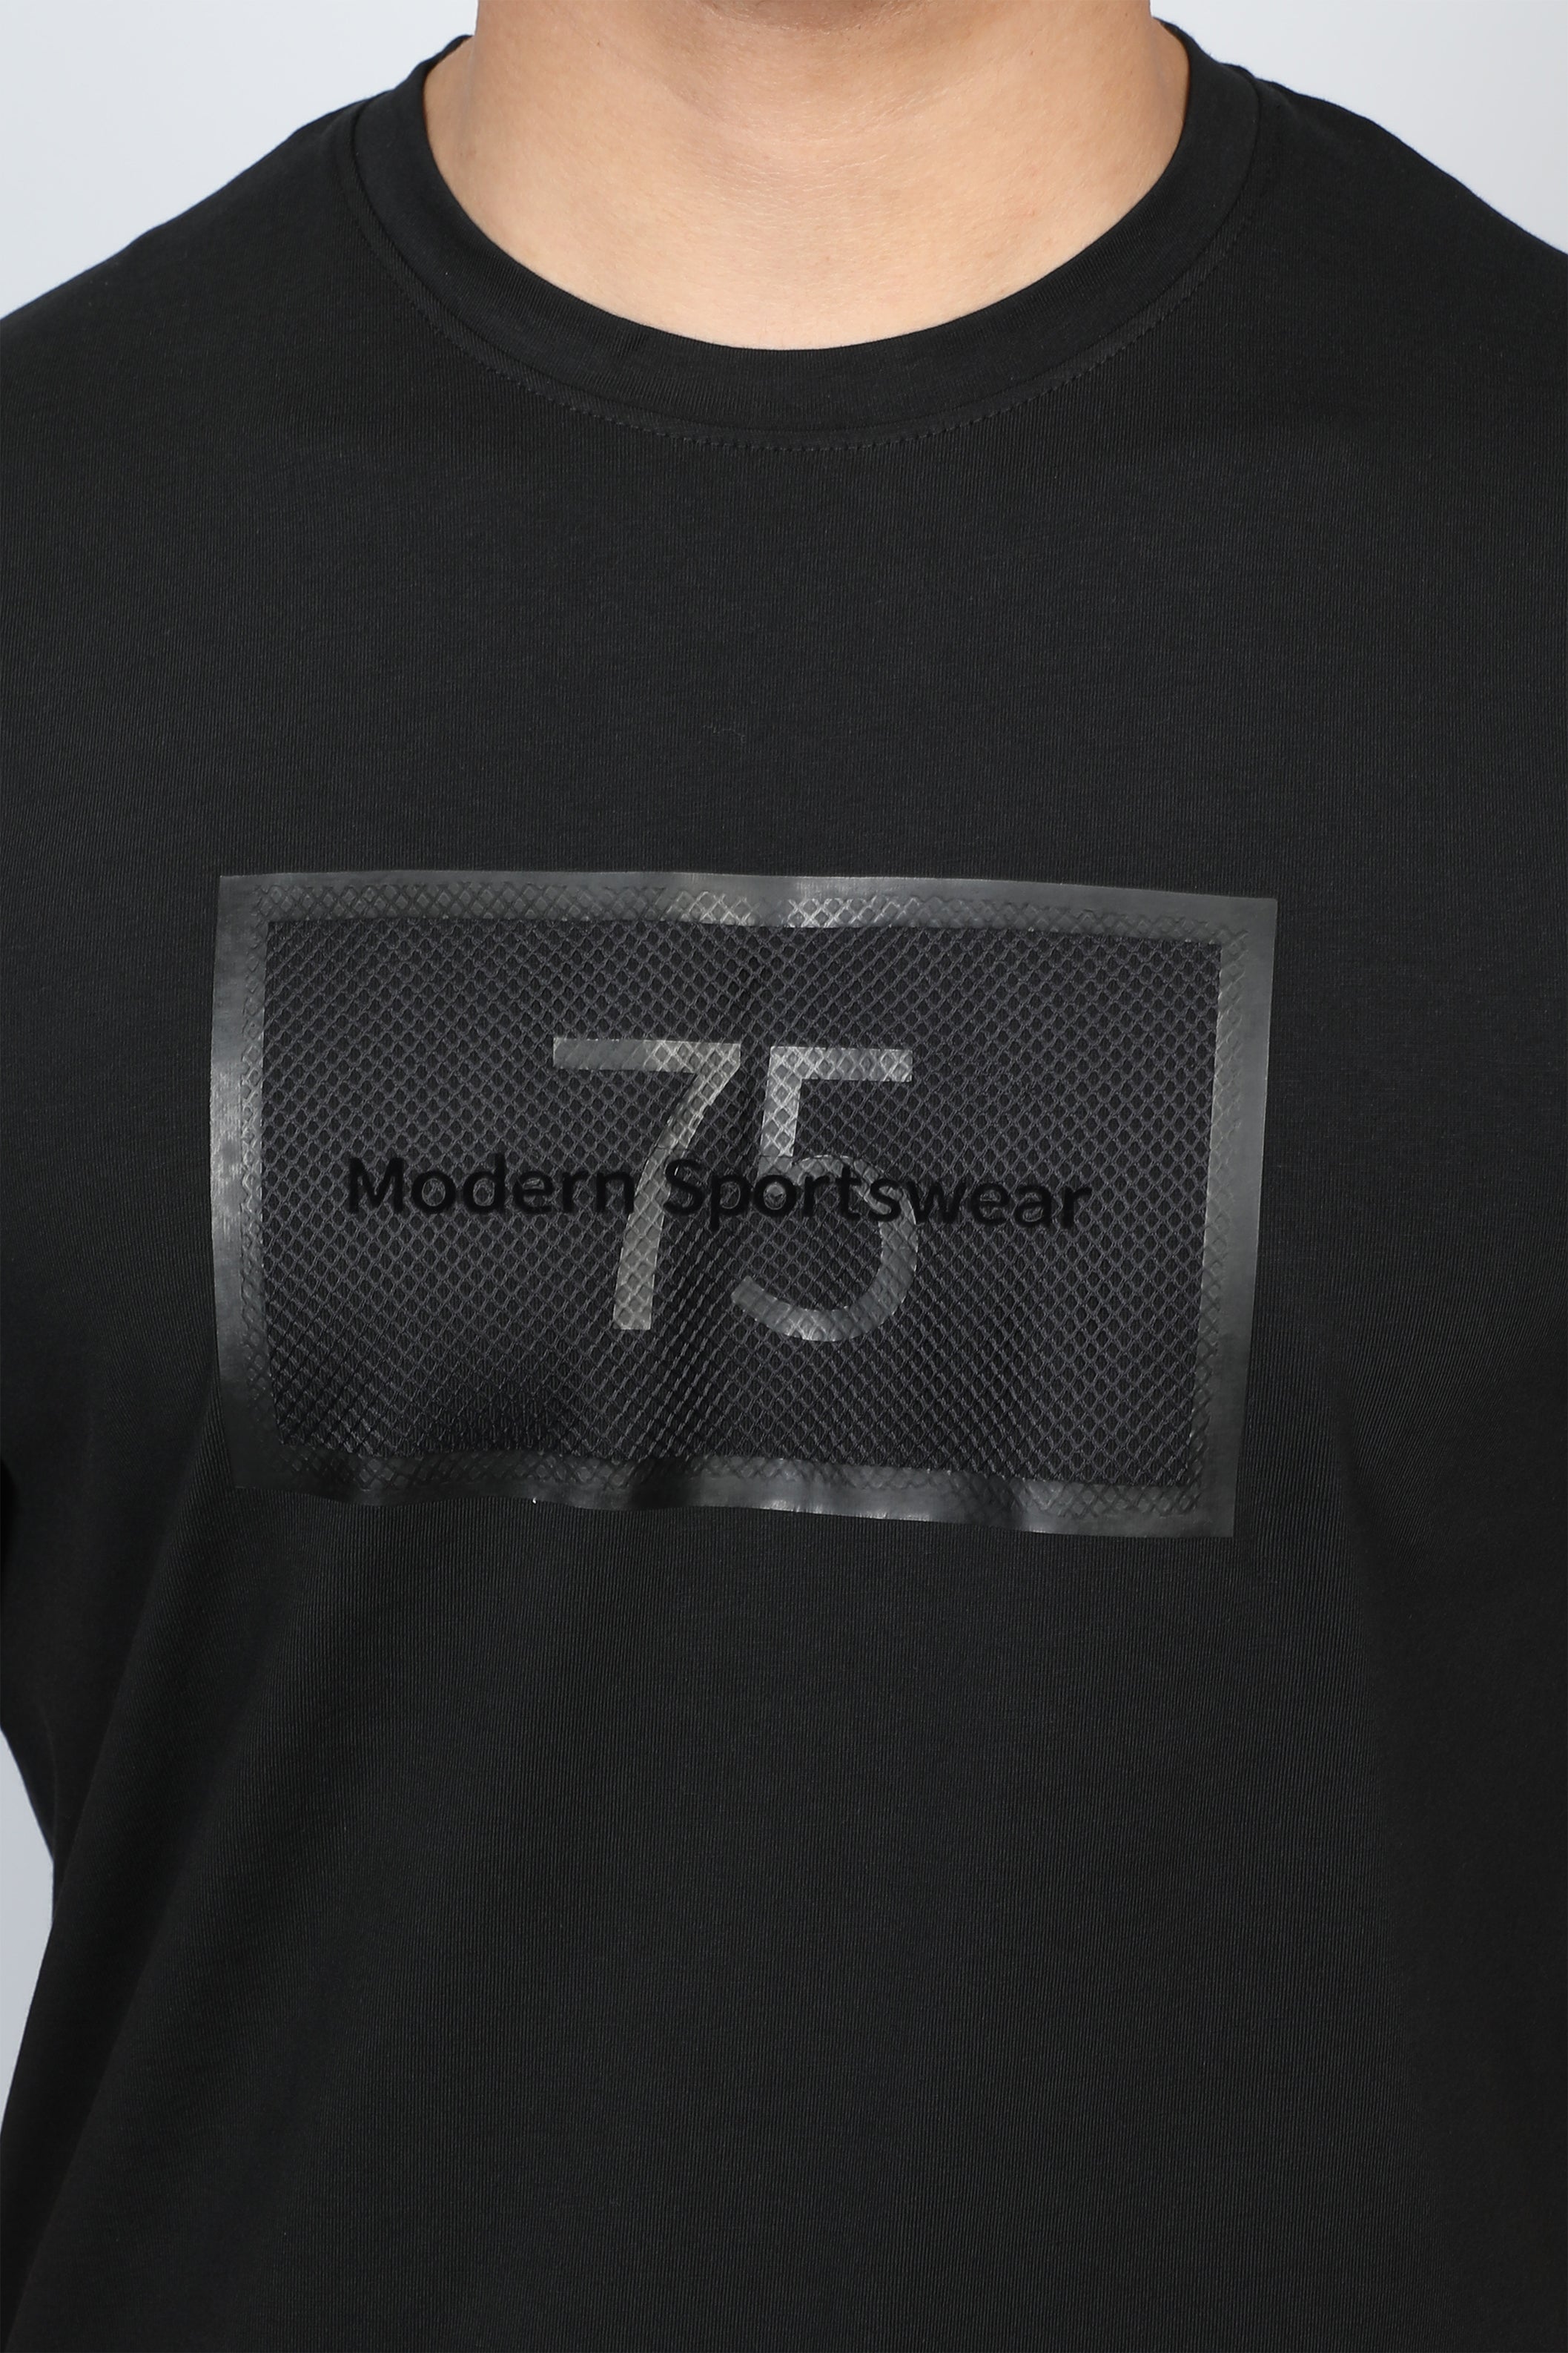 Men Black T-shirt Front Number Designed